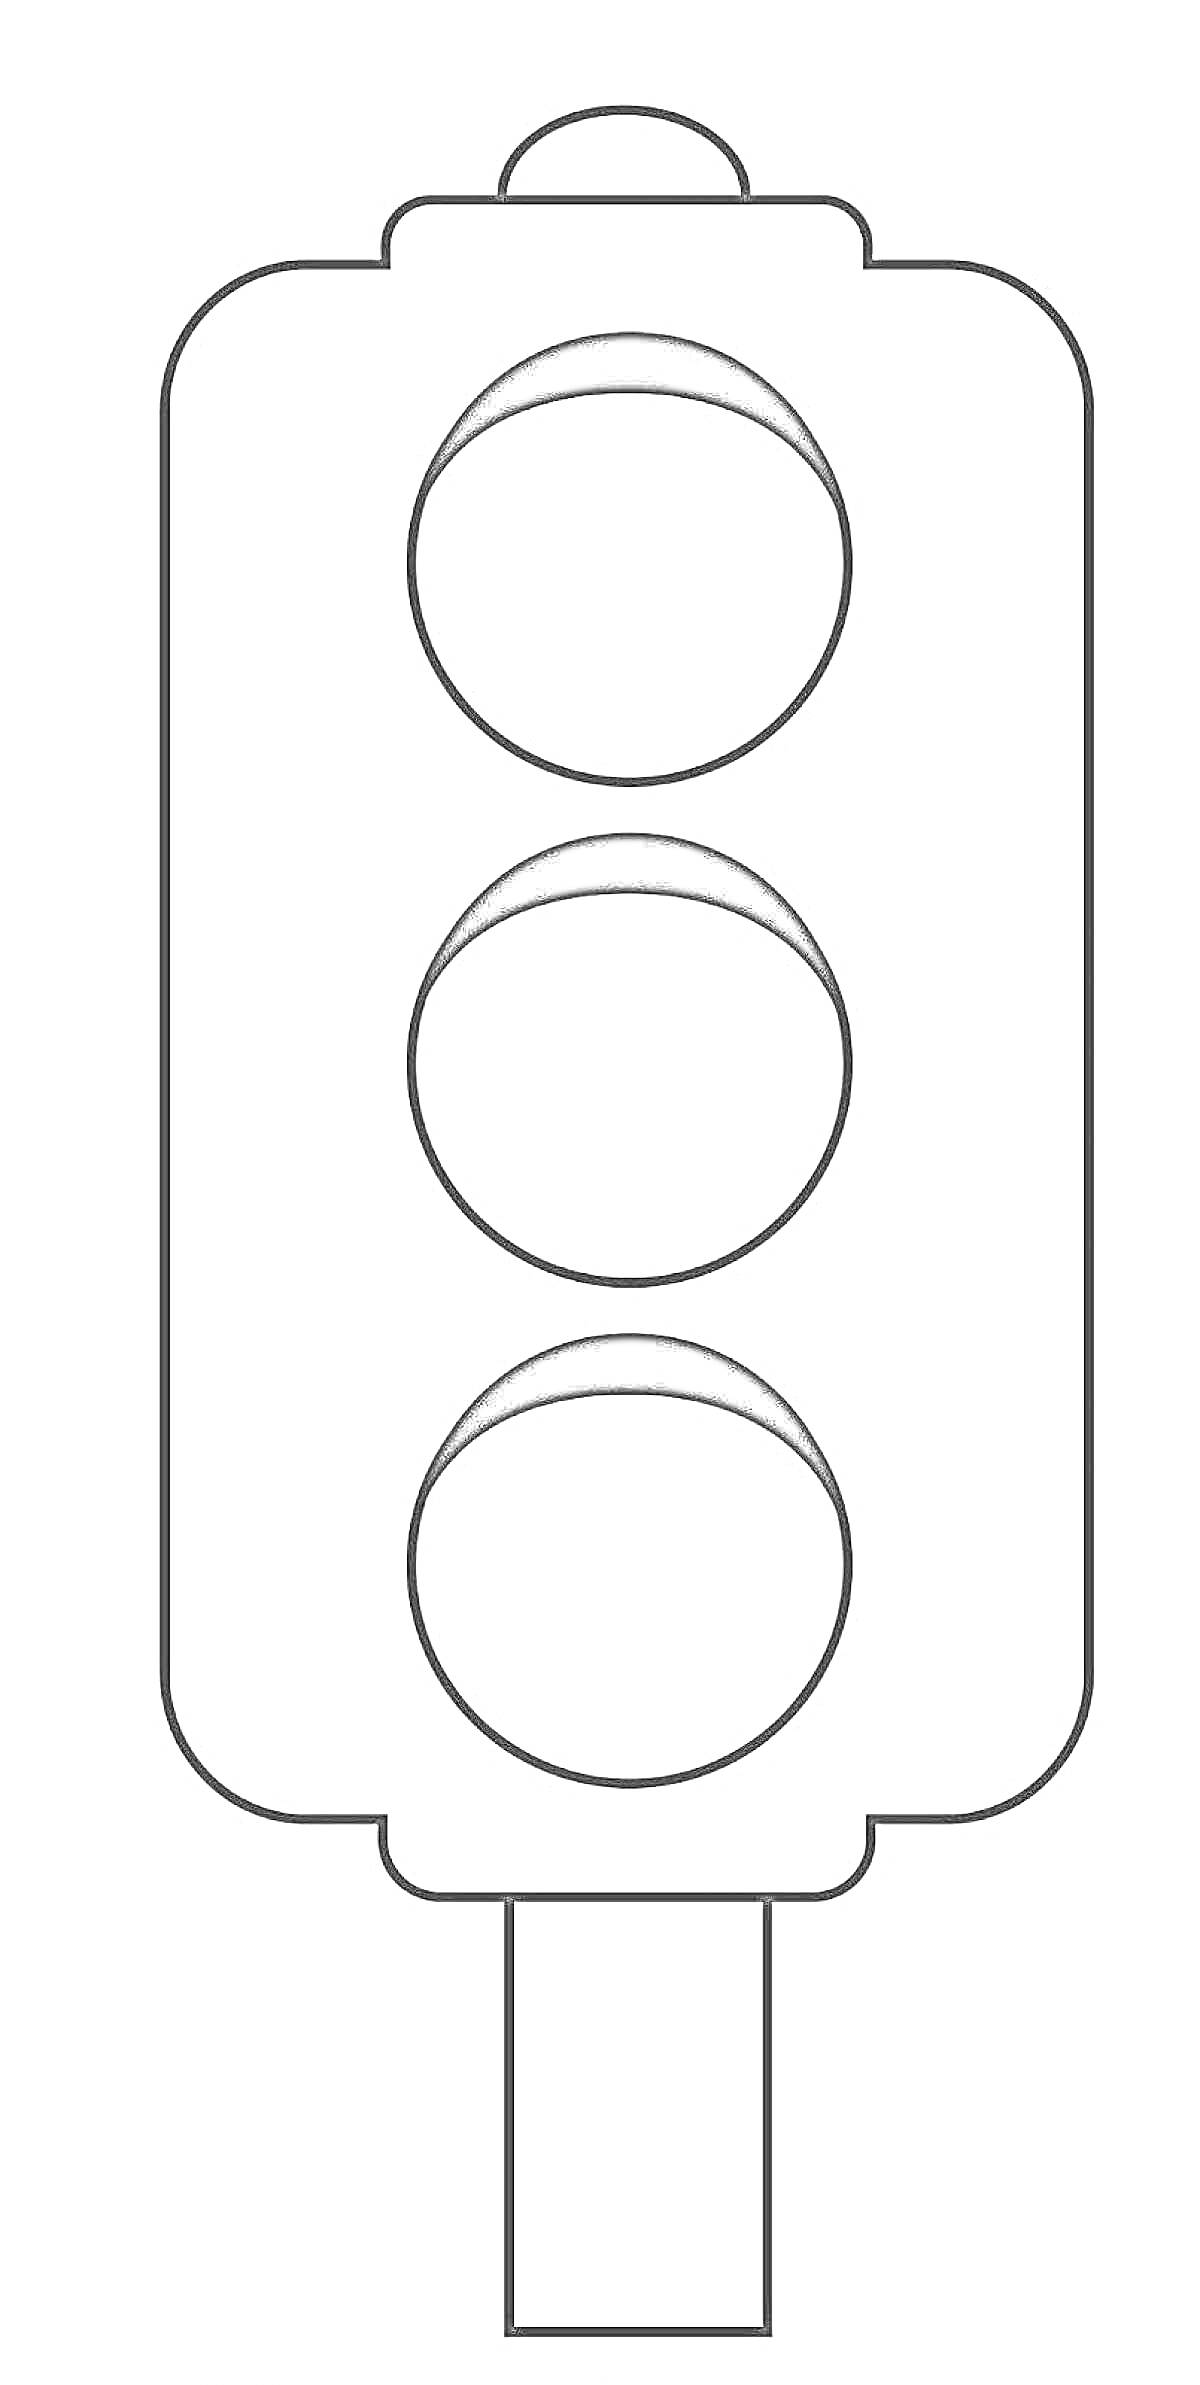 Раскраска Светофор с тремя кругами и стойкой для детей